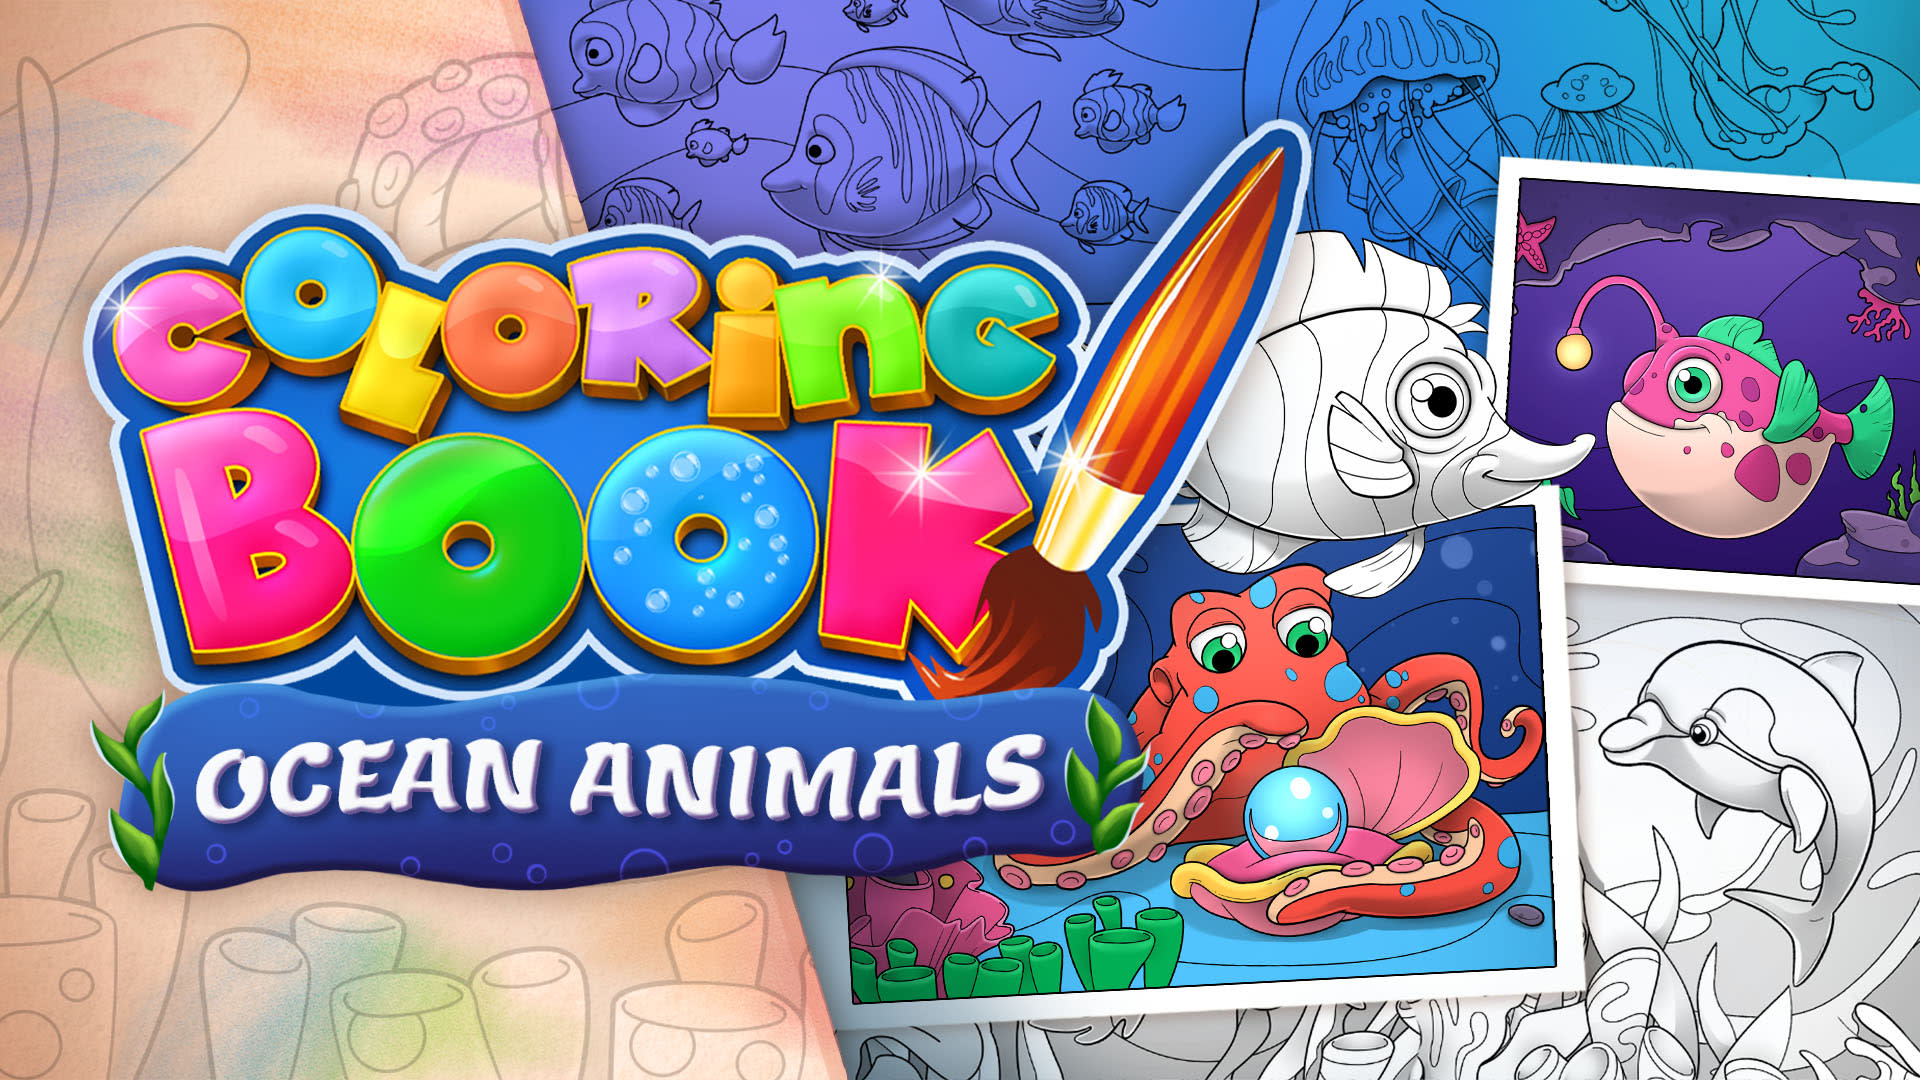 Coloring Book: Ocean Animals - 29 nouveaux dessins 